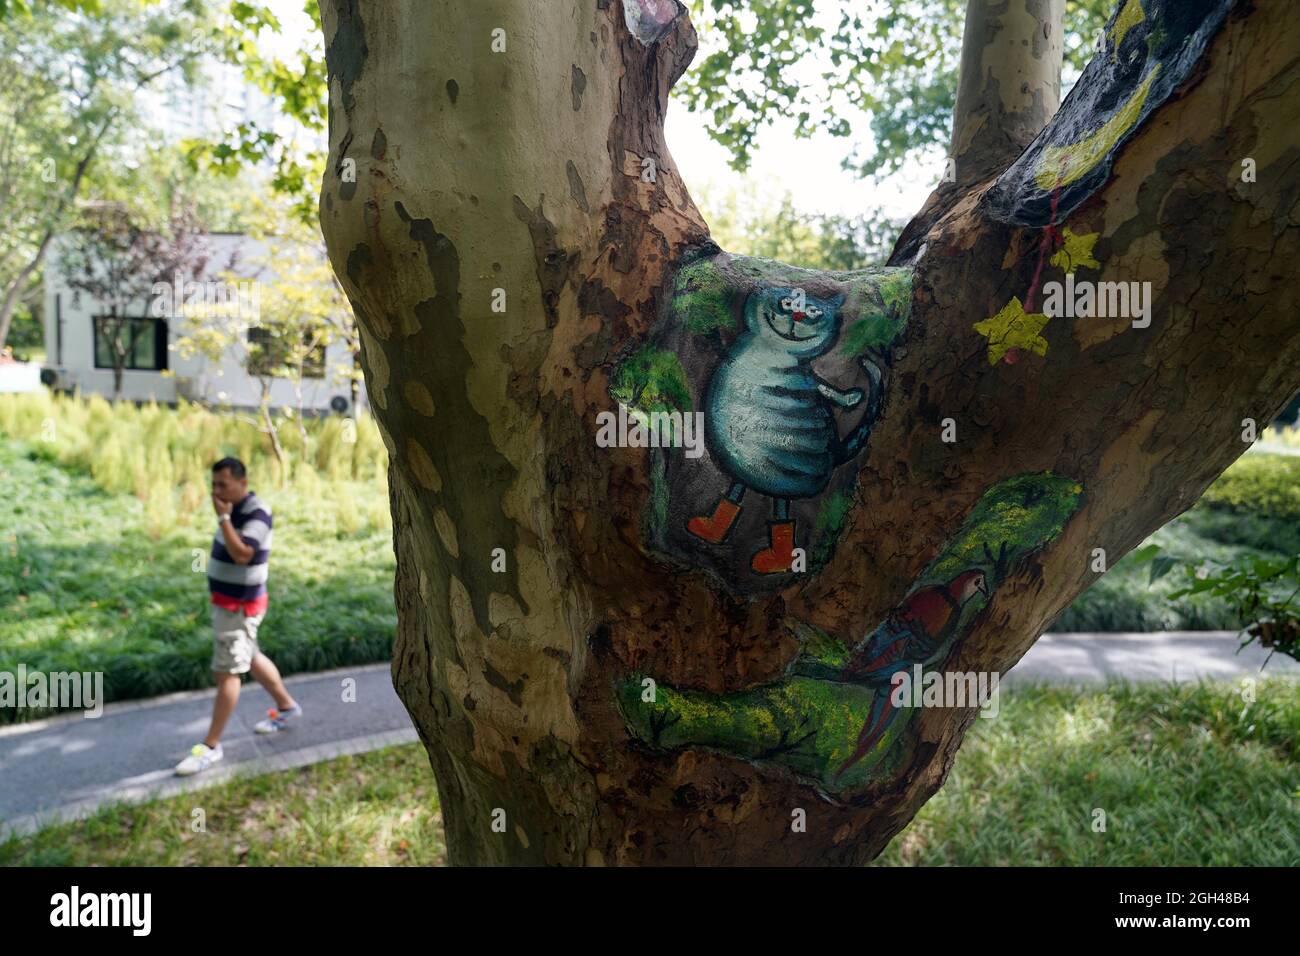 Shanghai, Cina. 31 ago 2021. I buchi di alberi dipinti sono visti al parco di Zhabei a Shanghai, Cina orientale, 31 agosto 2021. Il Parco Zhabei ha recentemente fatto uno sforzo per migliorarne l'aspetto pulendo e abbellendo i fori degli alberi nel parco con motivi creativi. Credit: Wang Xiang/Xinhua/Alamy Live News Foto Stock